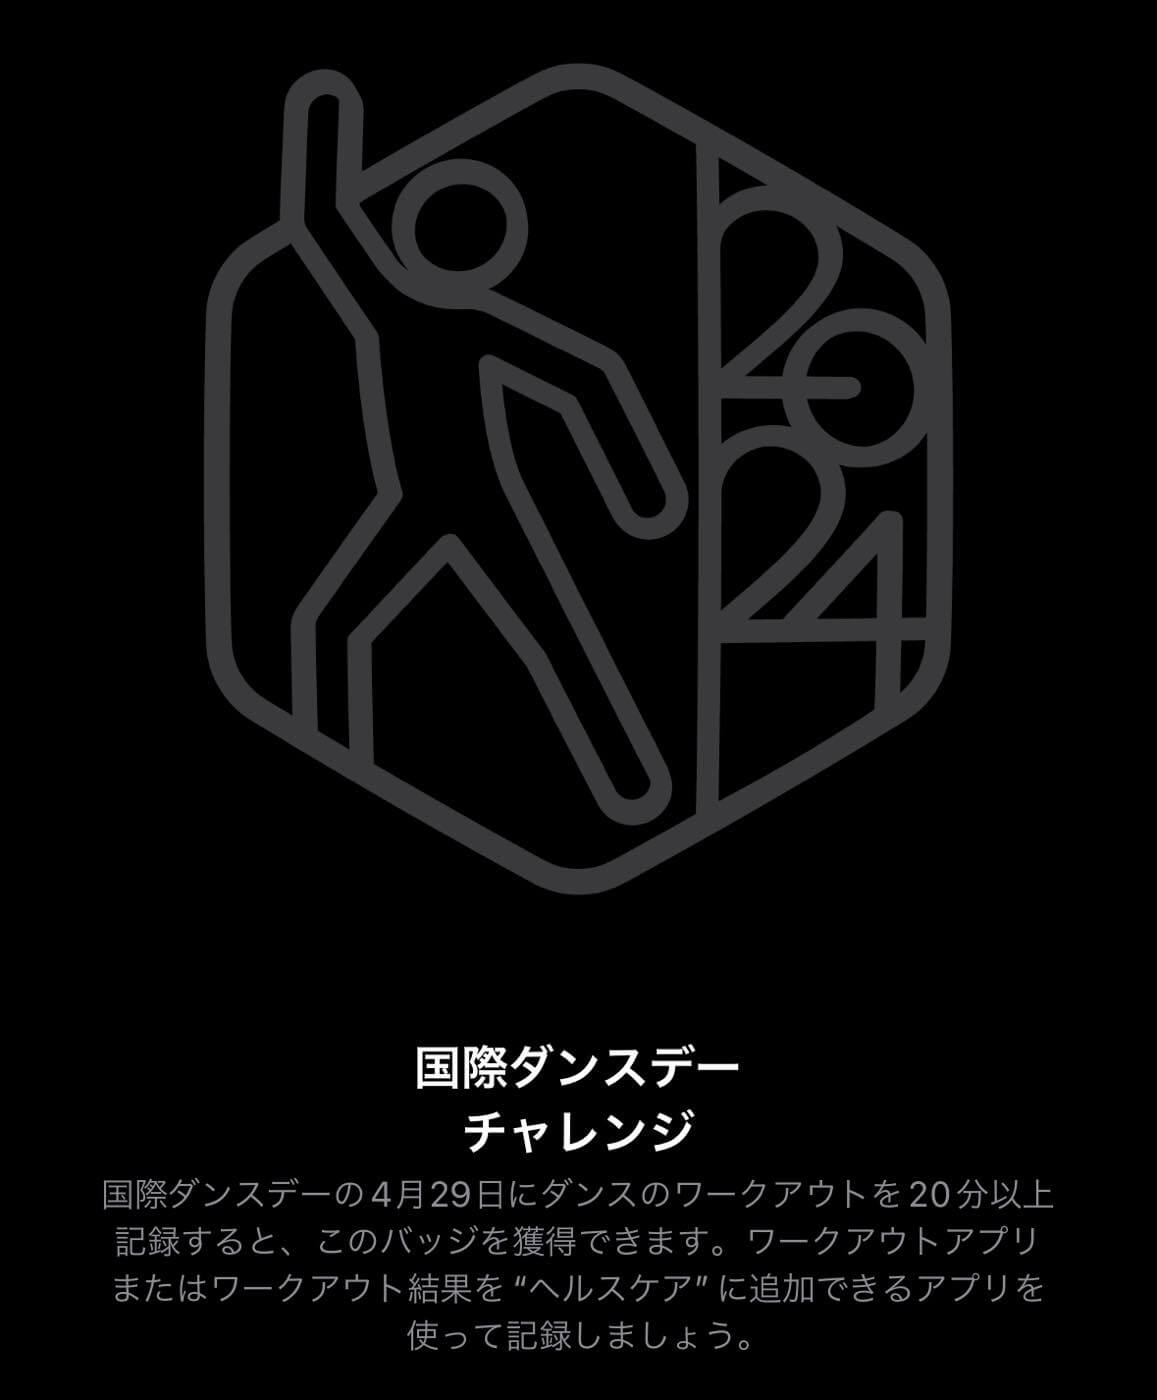 【本日限り】｢Apple Watch｣のチャレンジ企画｢国際ダンスデーチャレンジ｣が開催中